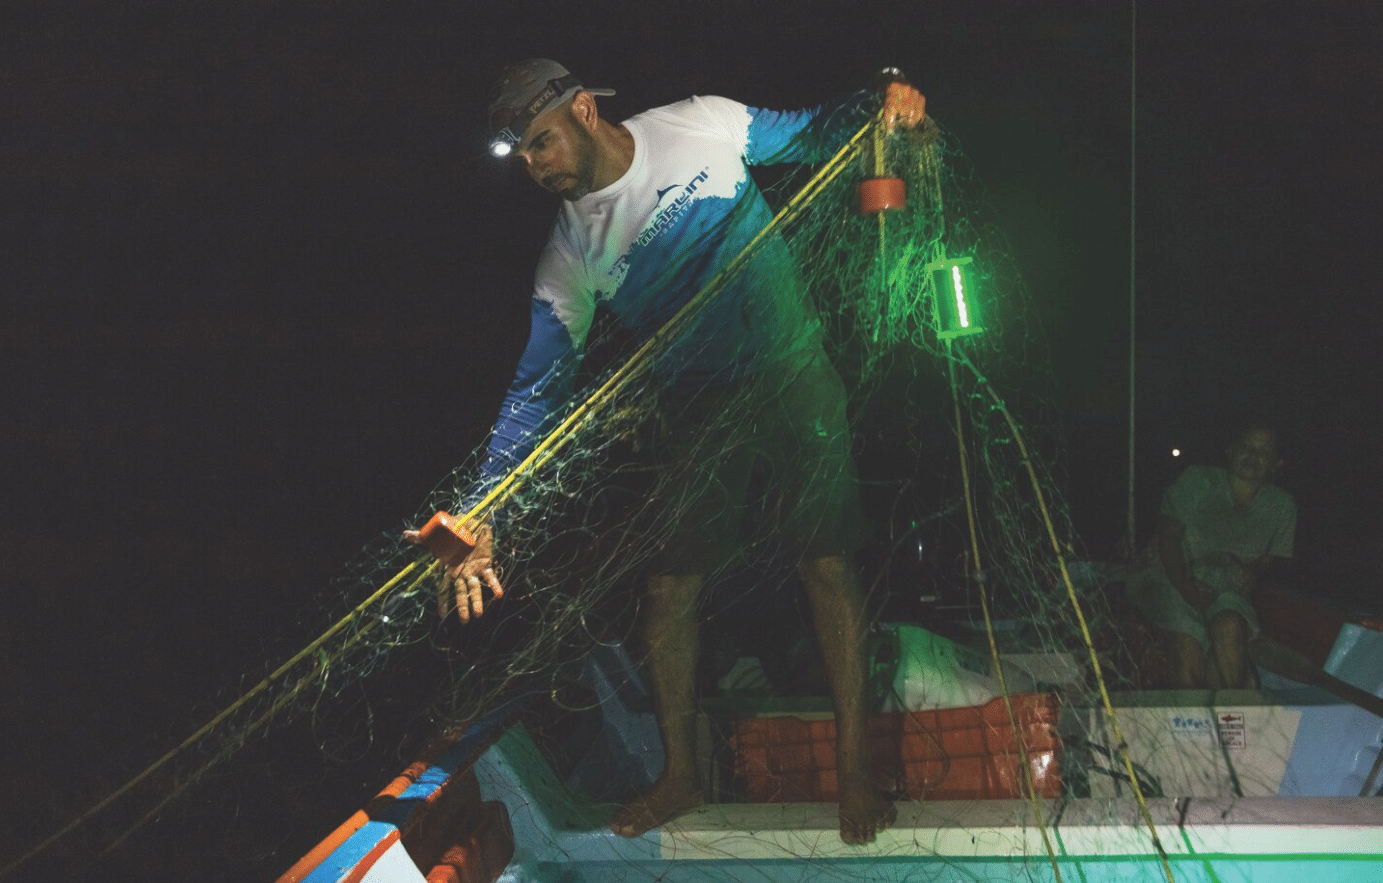 illuminated net save sealife 02